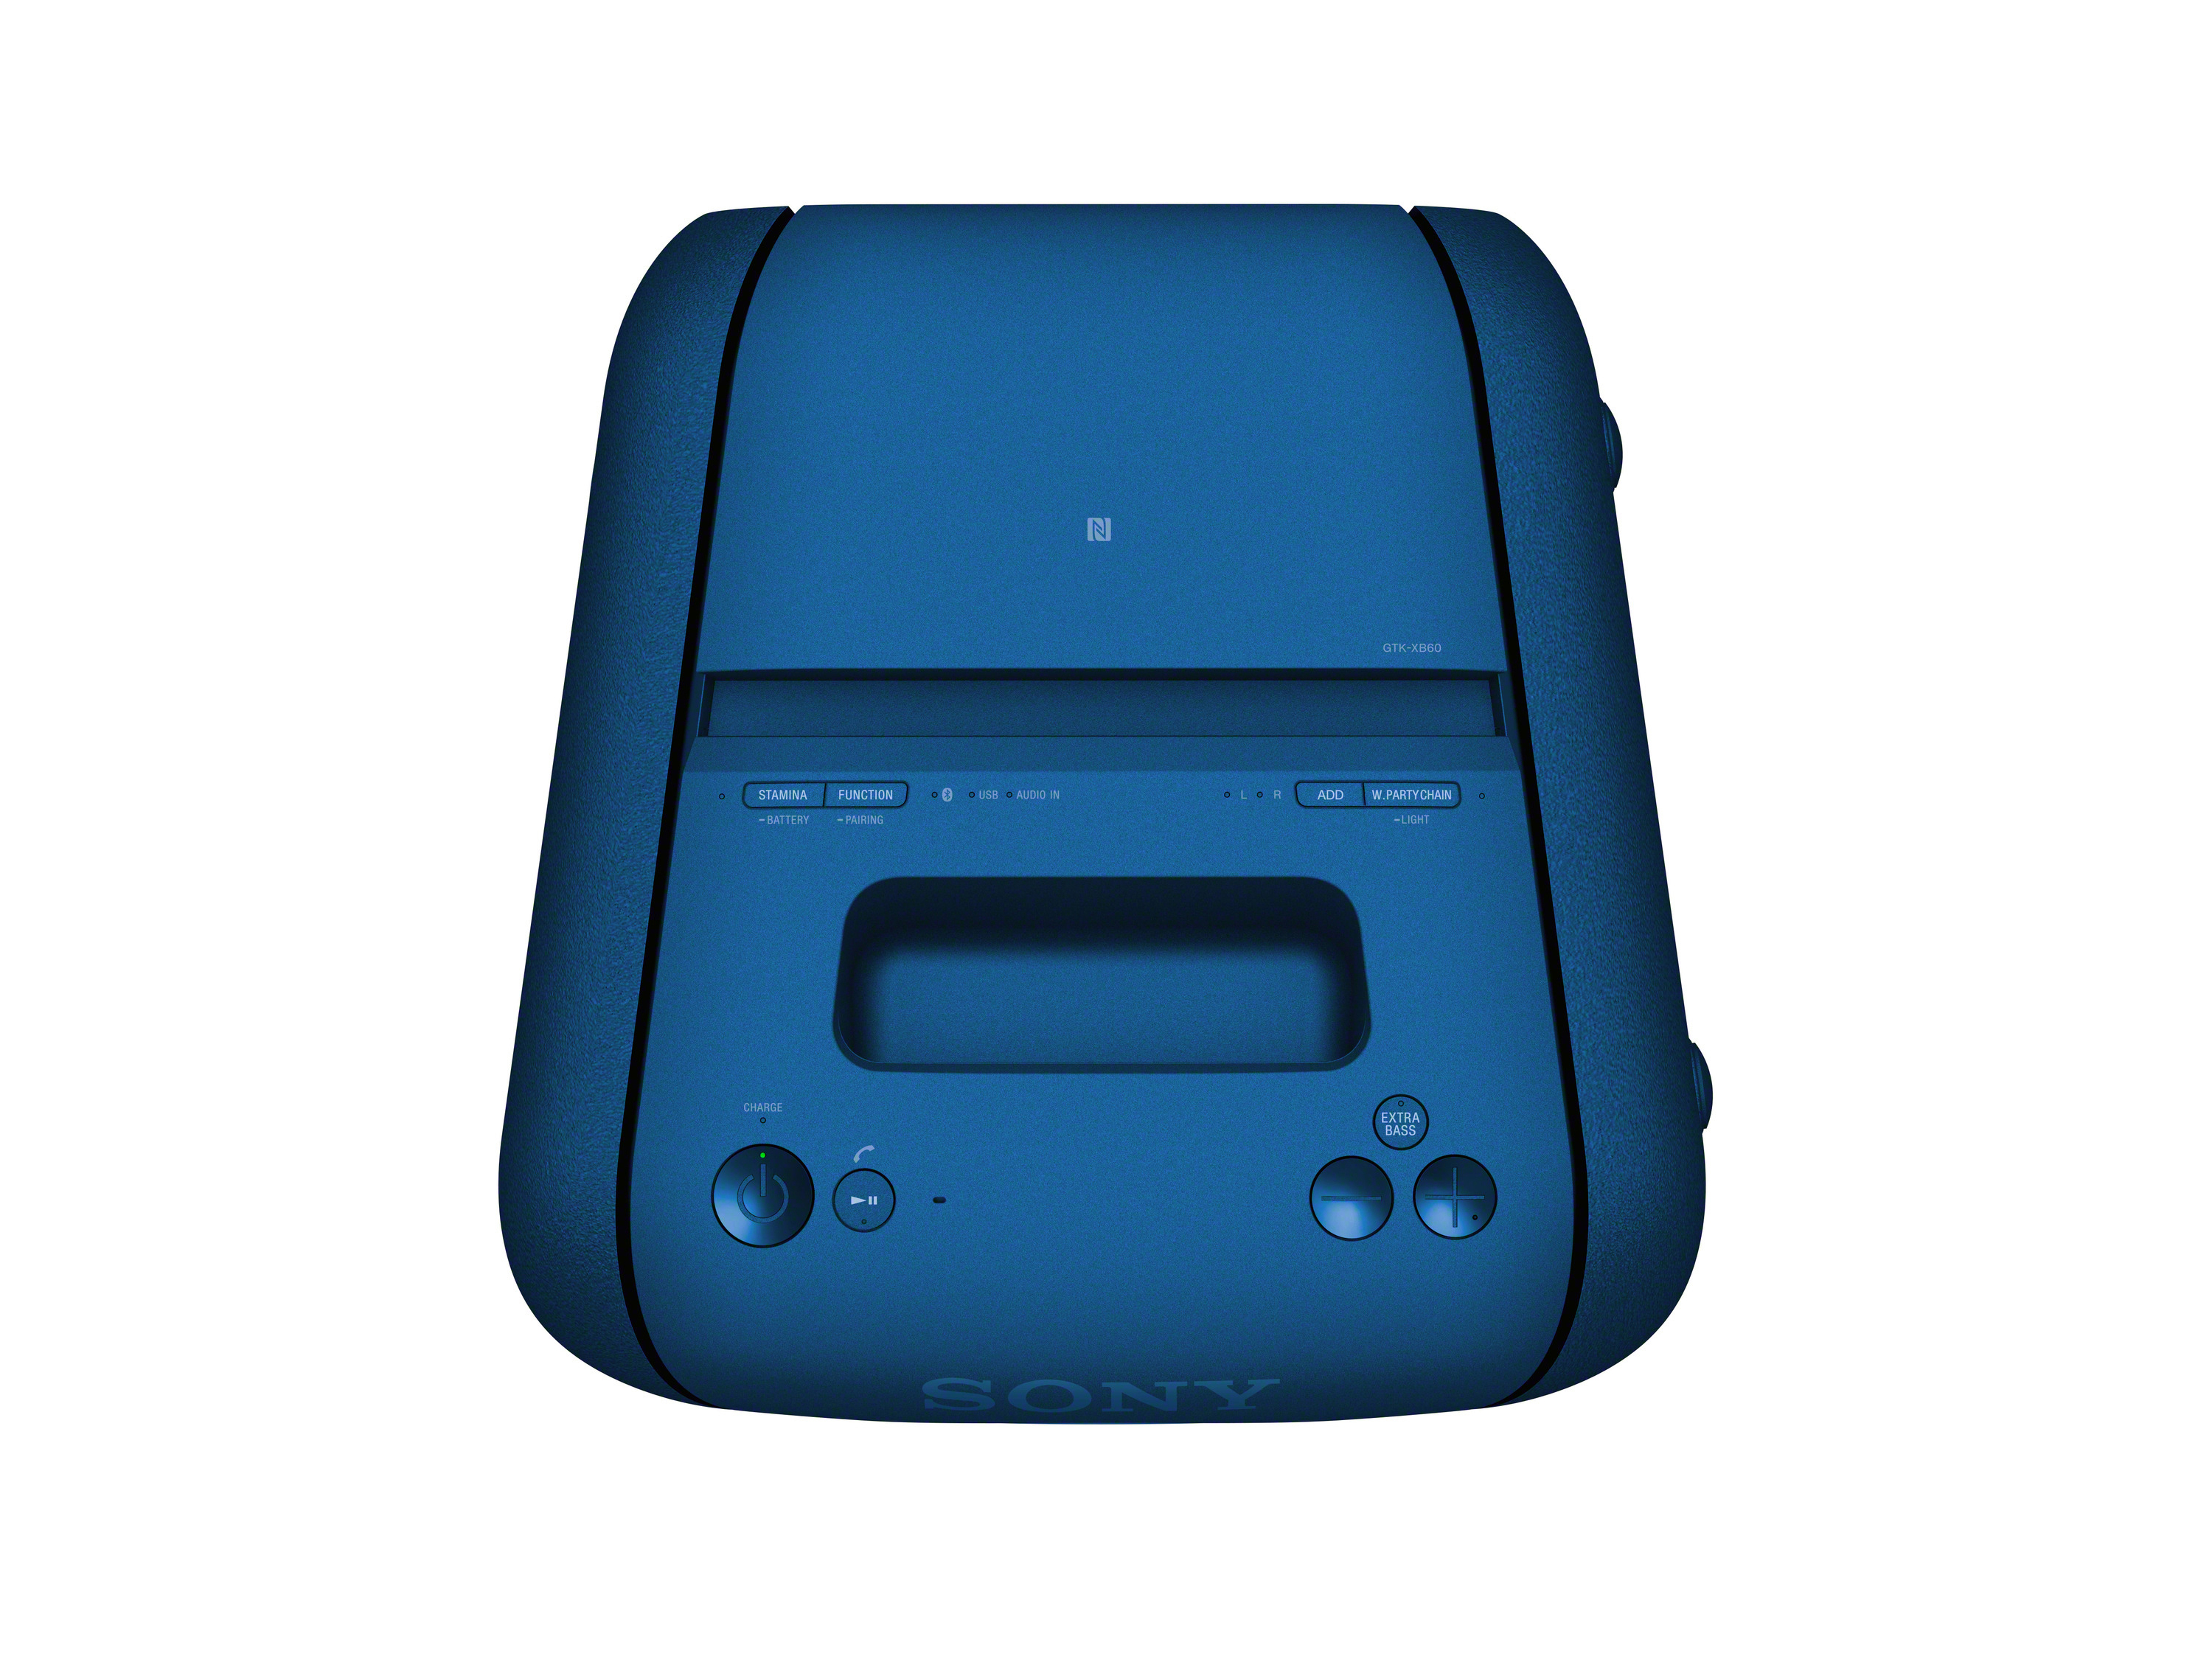 SONY GTK-XB60 Wireless Blau Chain Bluetooth Lautsprecher, Party